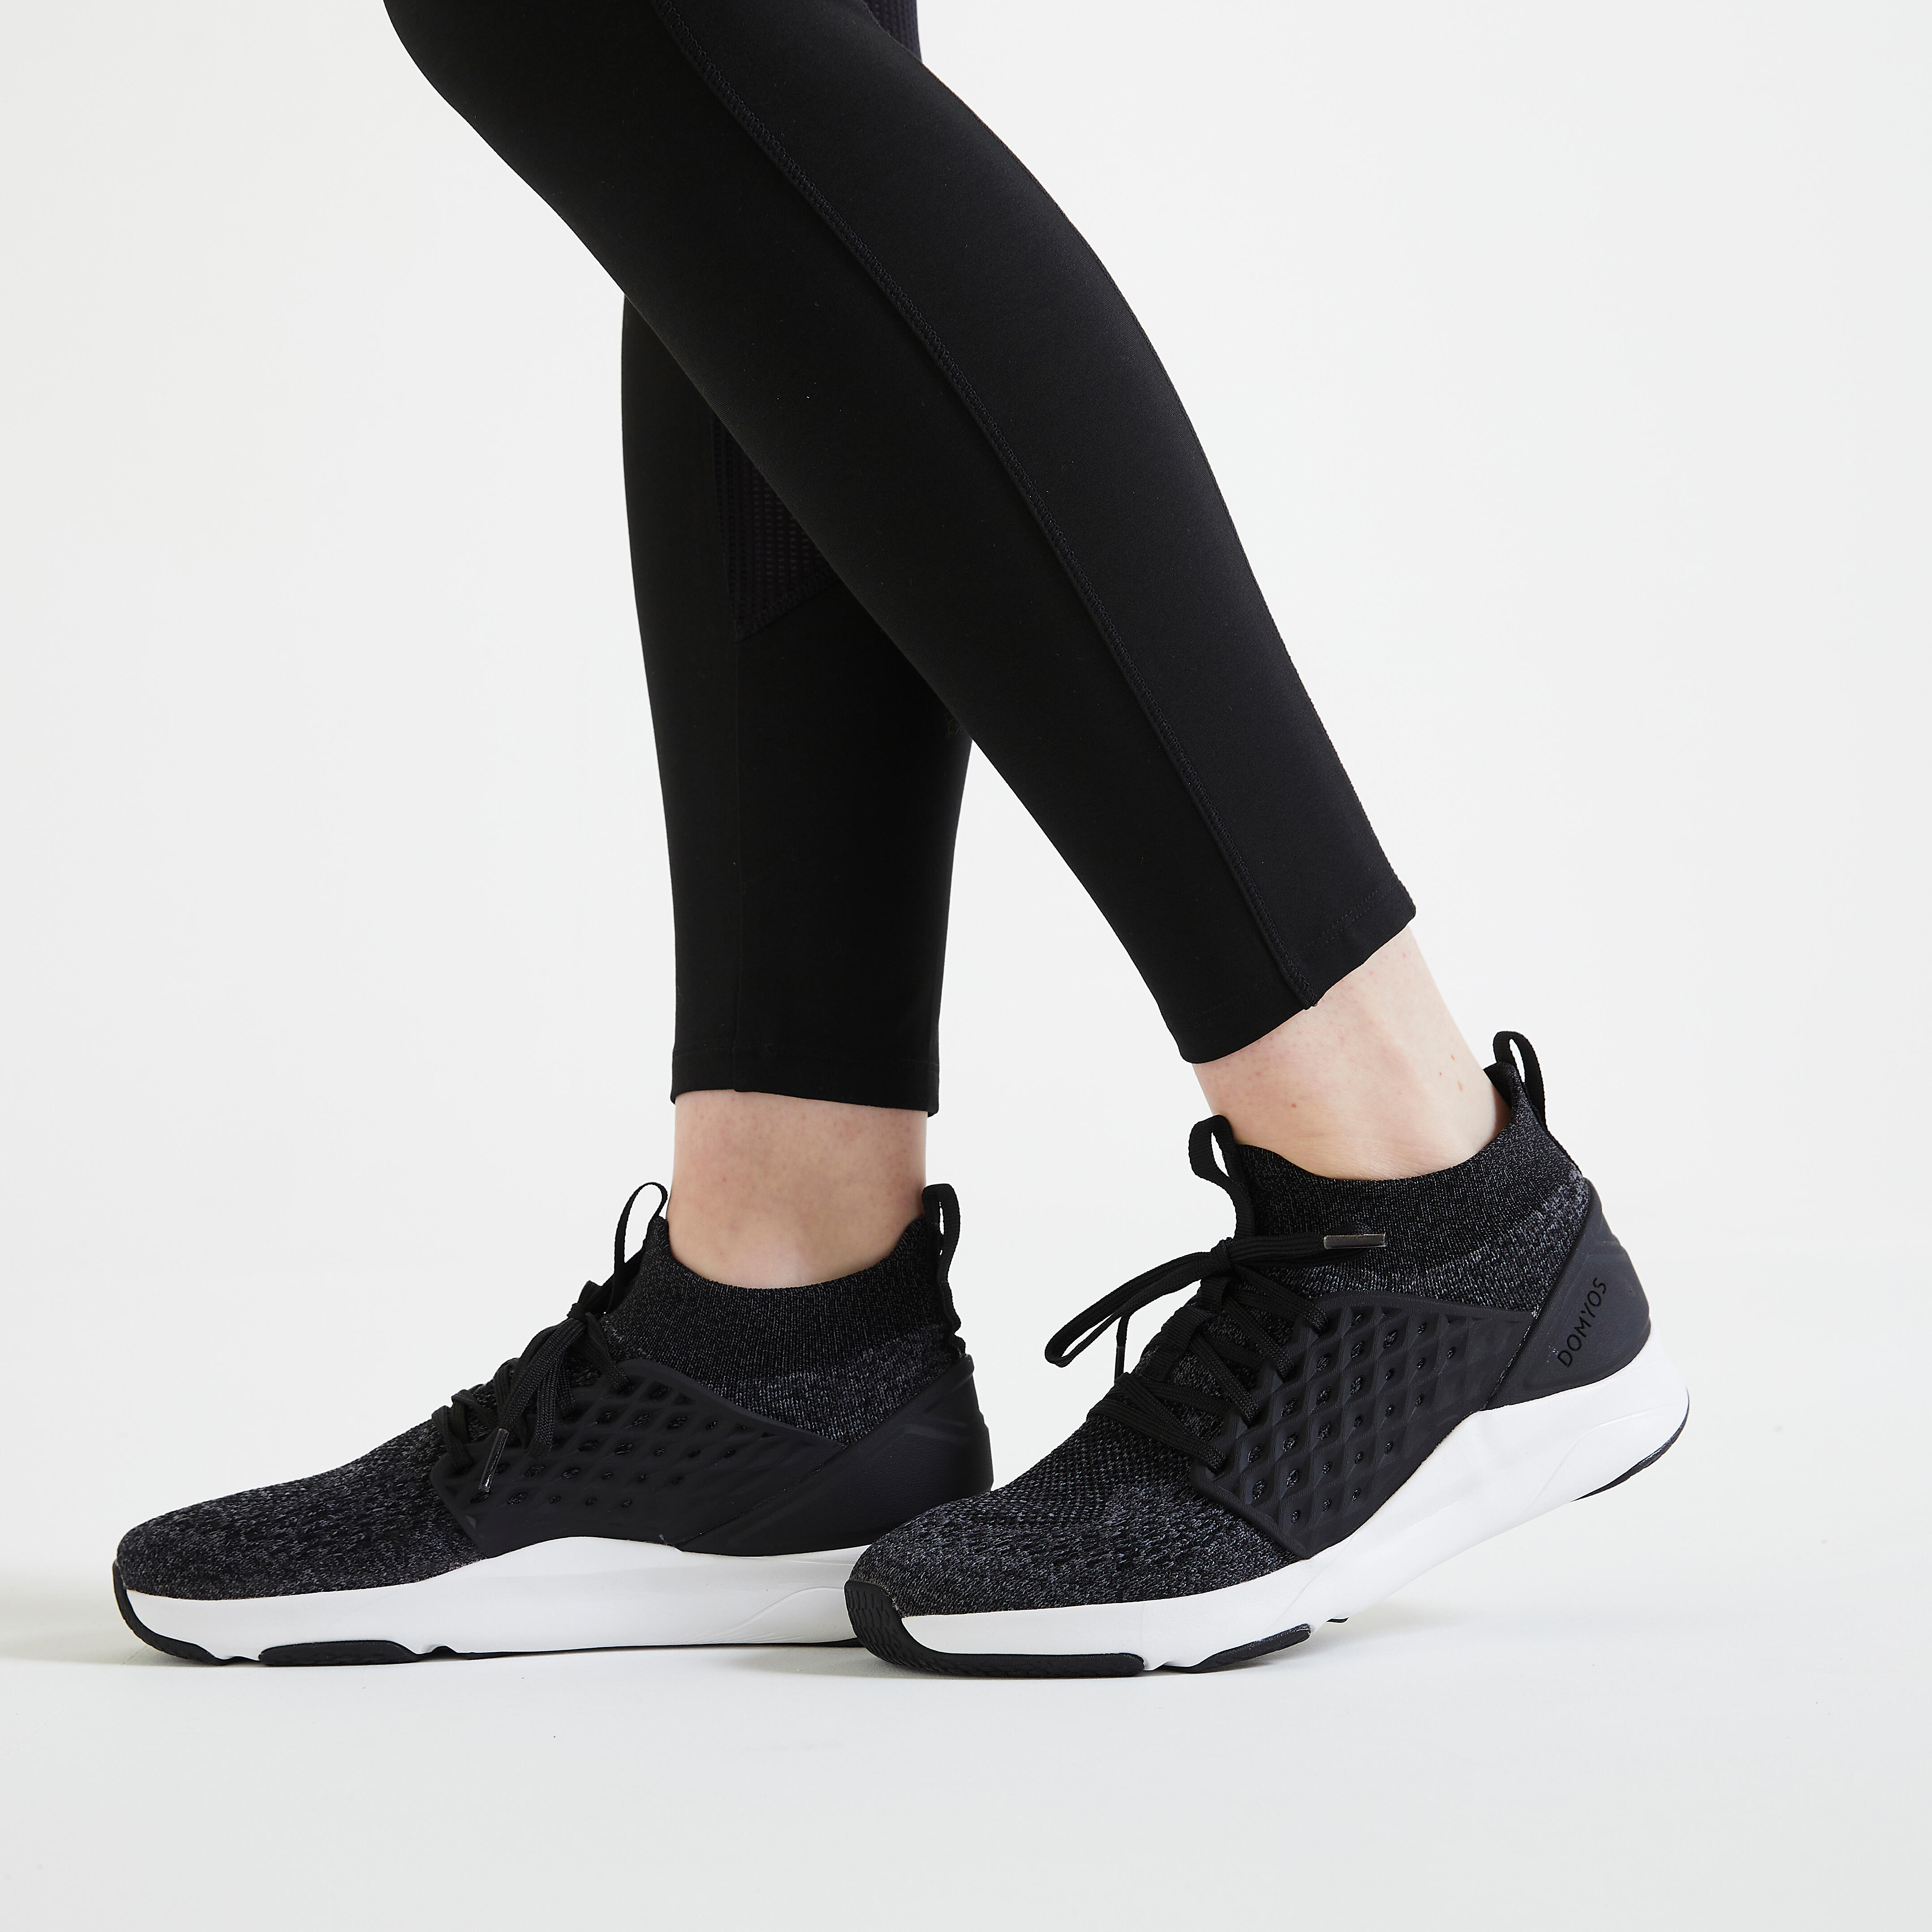 Women’s Fitness Leggings – FTI 100 Black